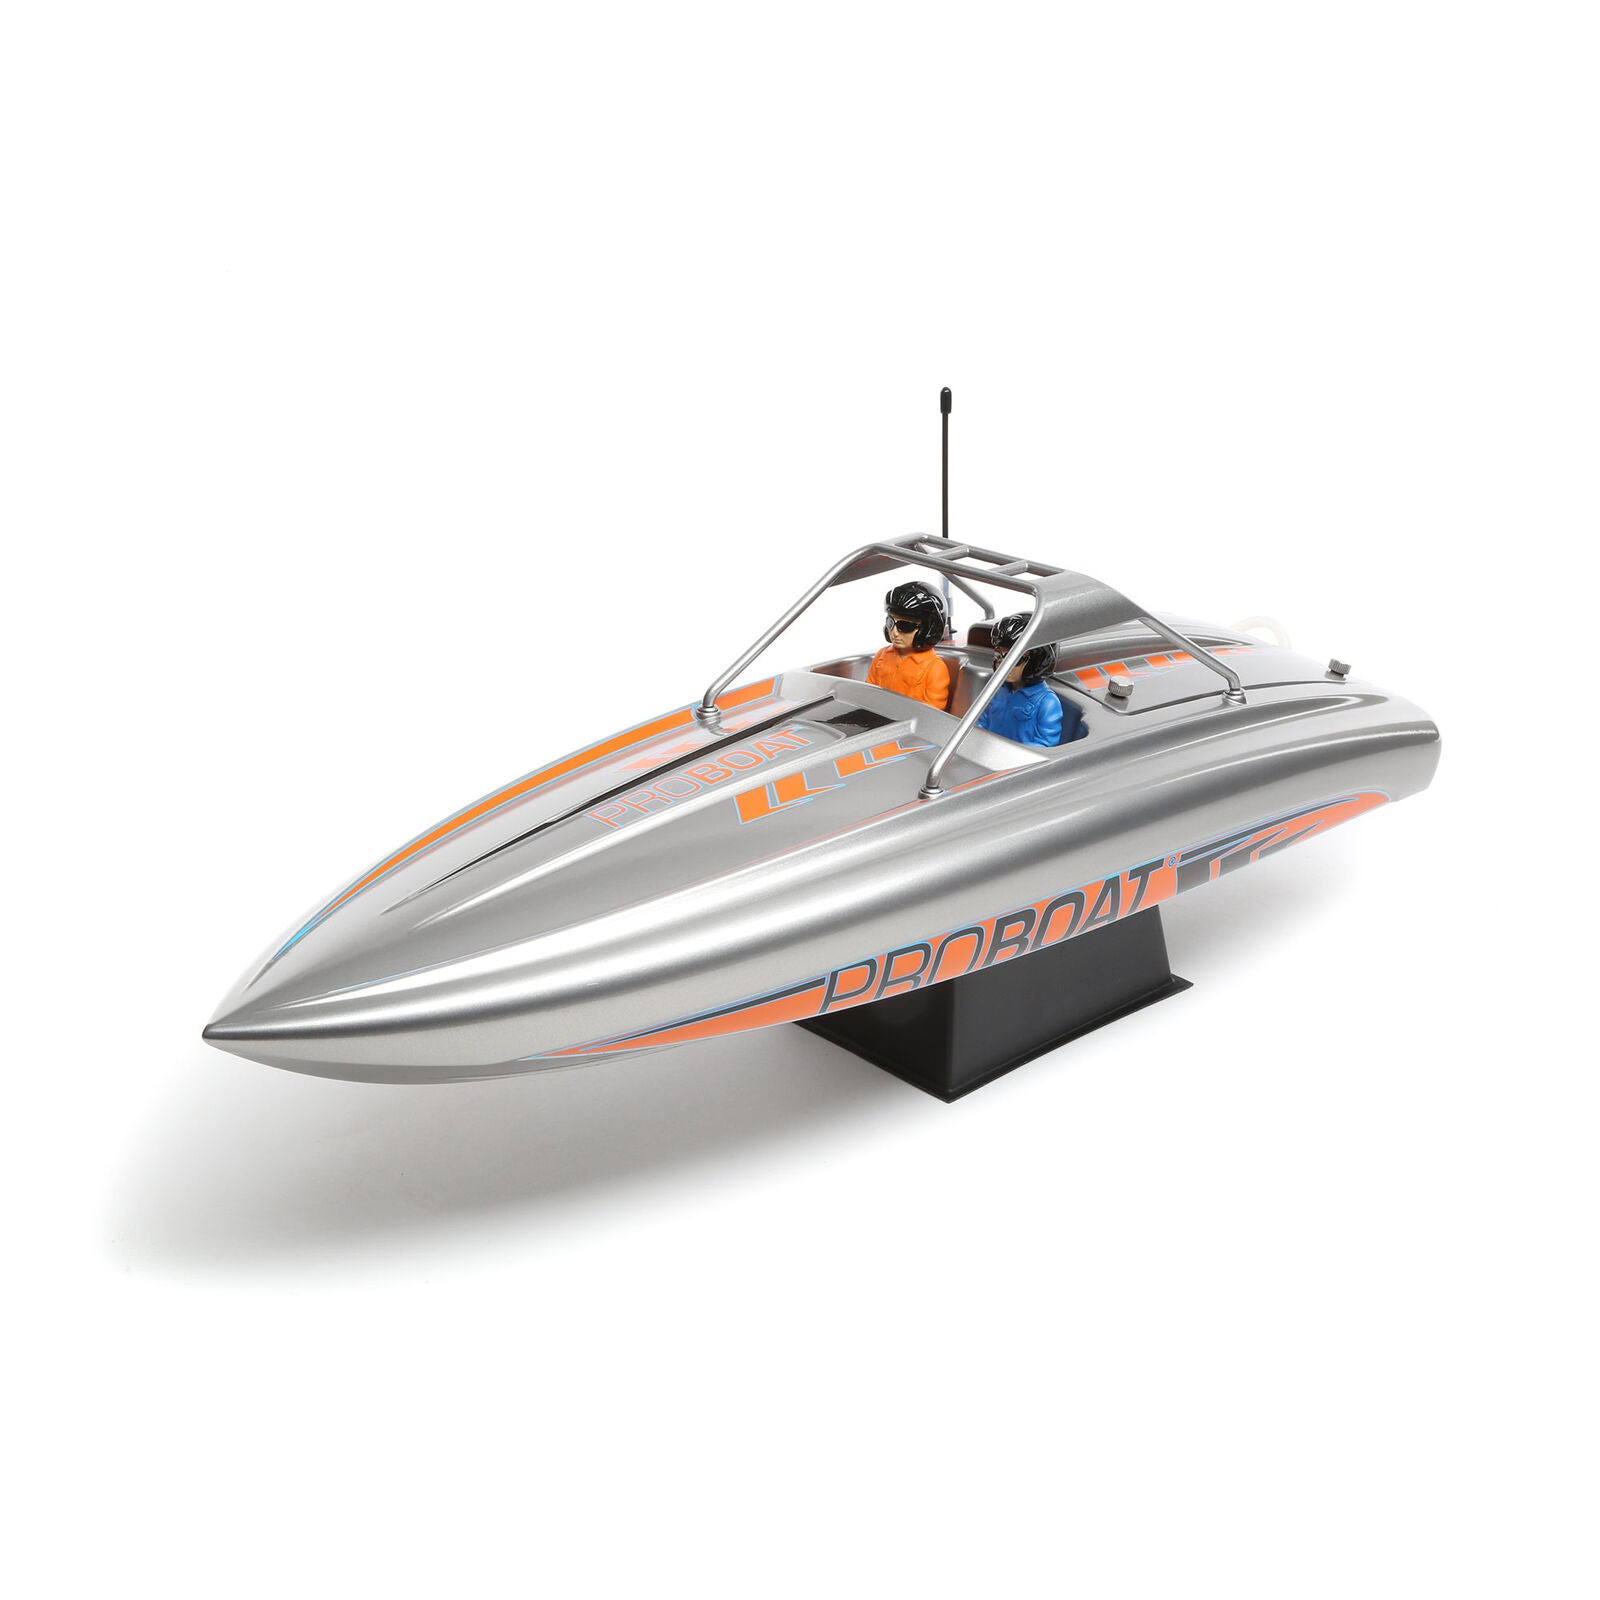 Pro Boat 23 River Jet Boat RTR Model Kit